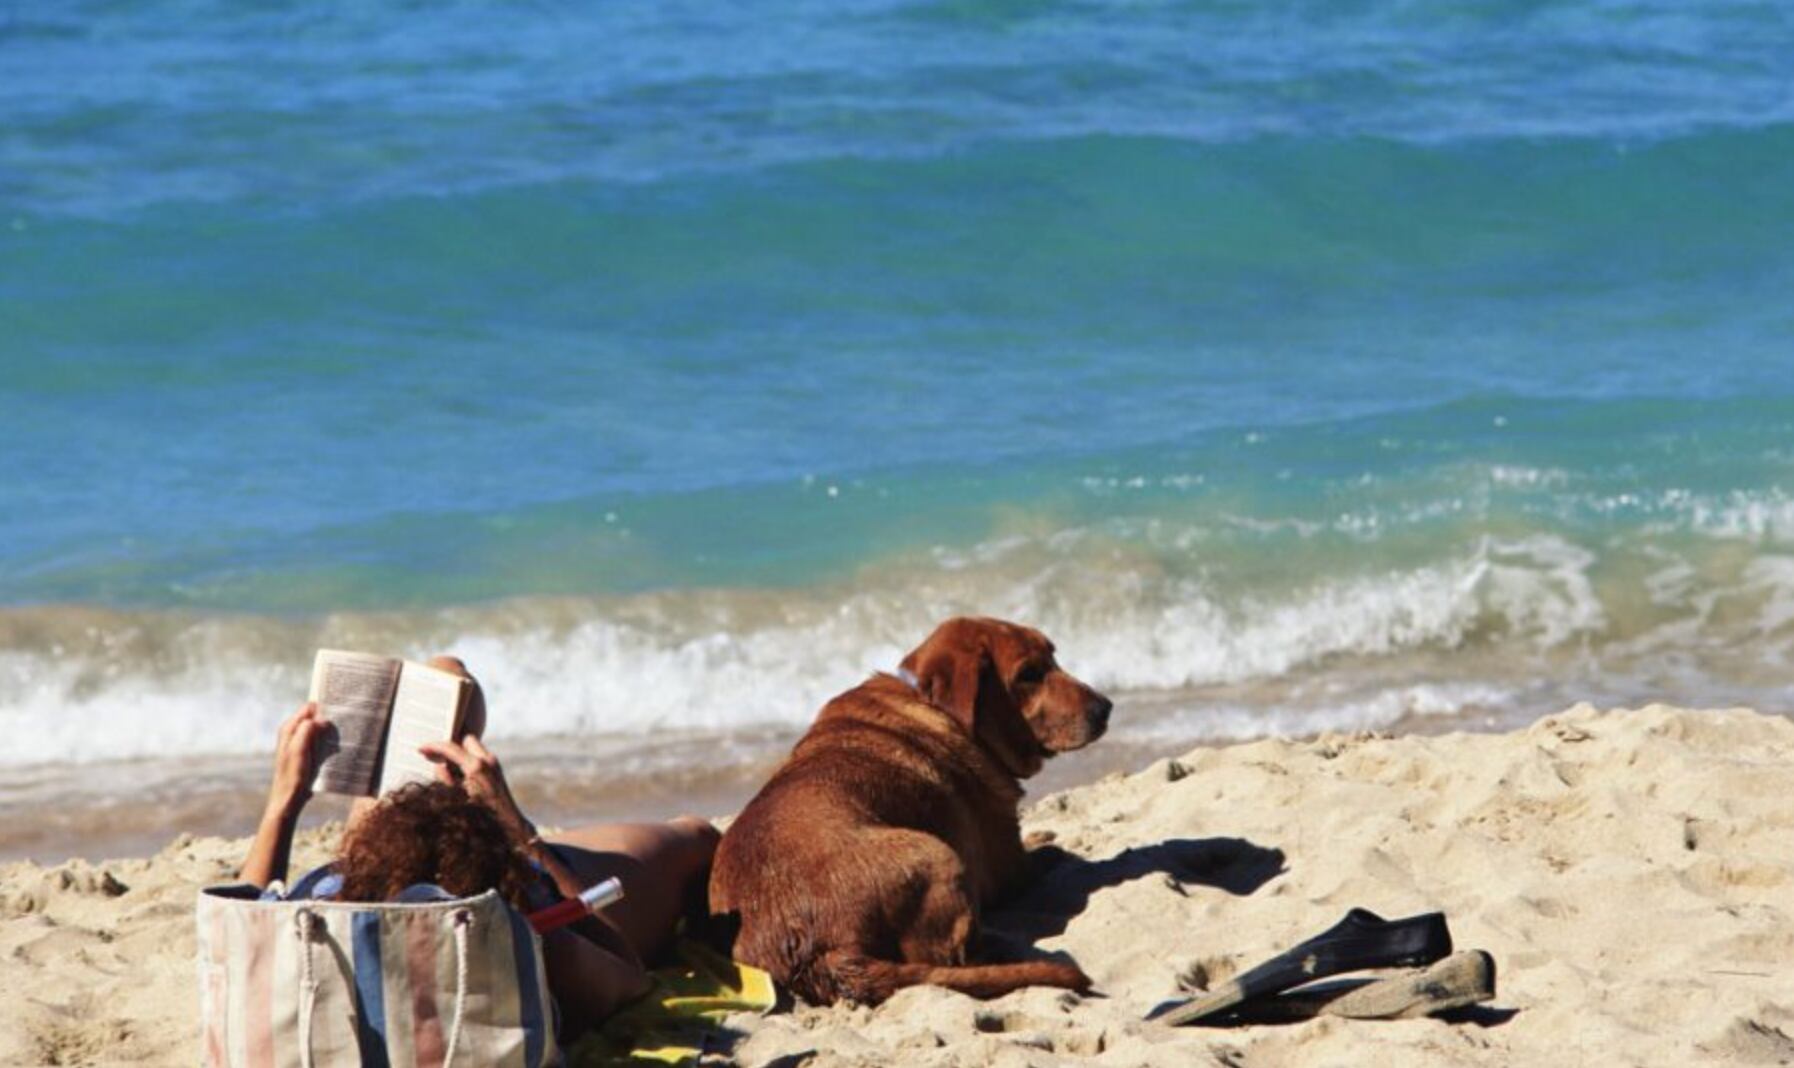 Miami playas para perros